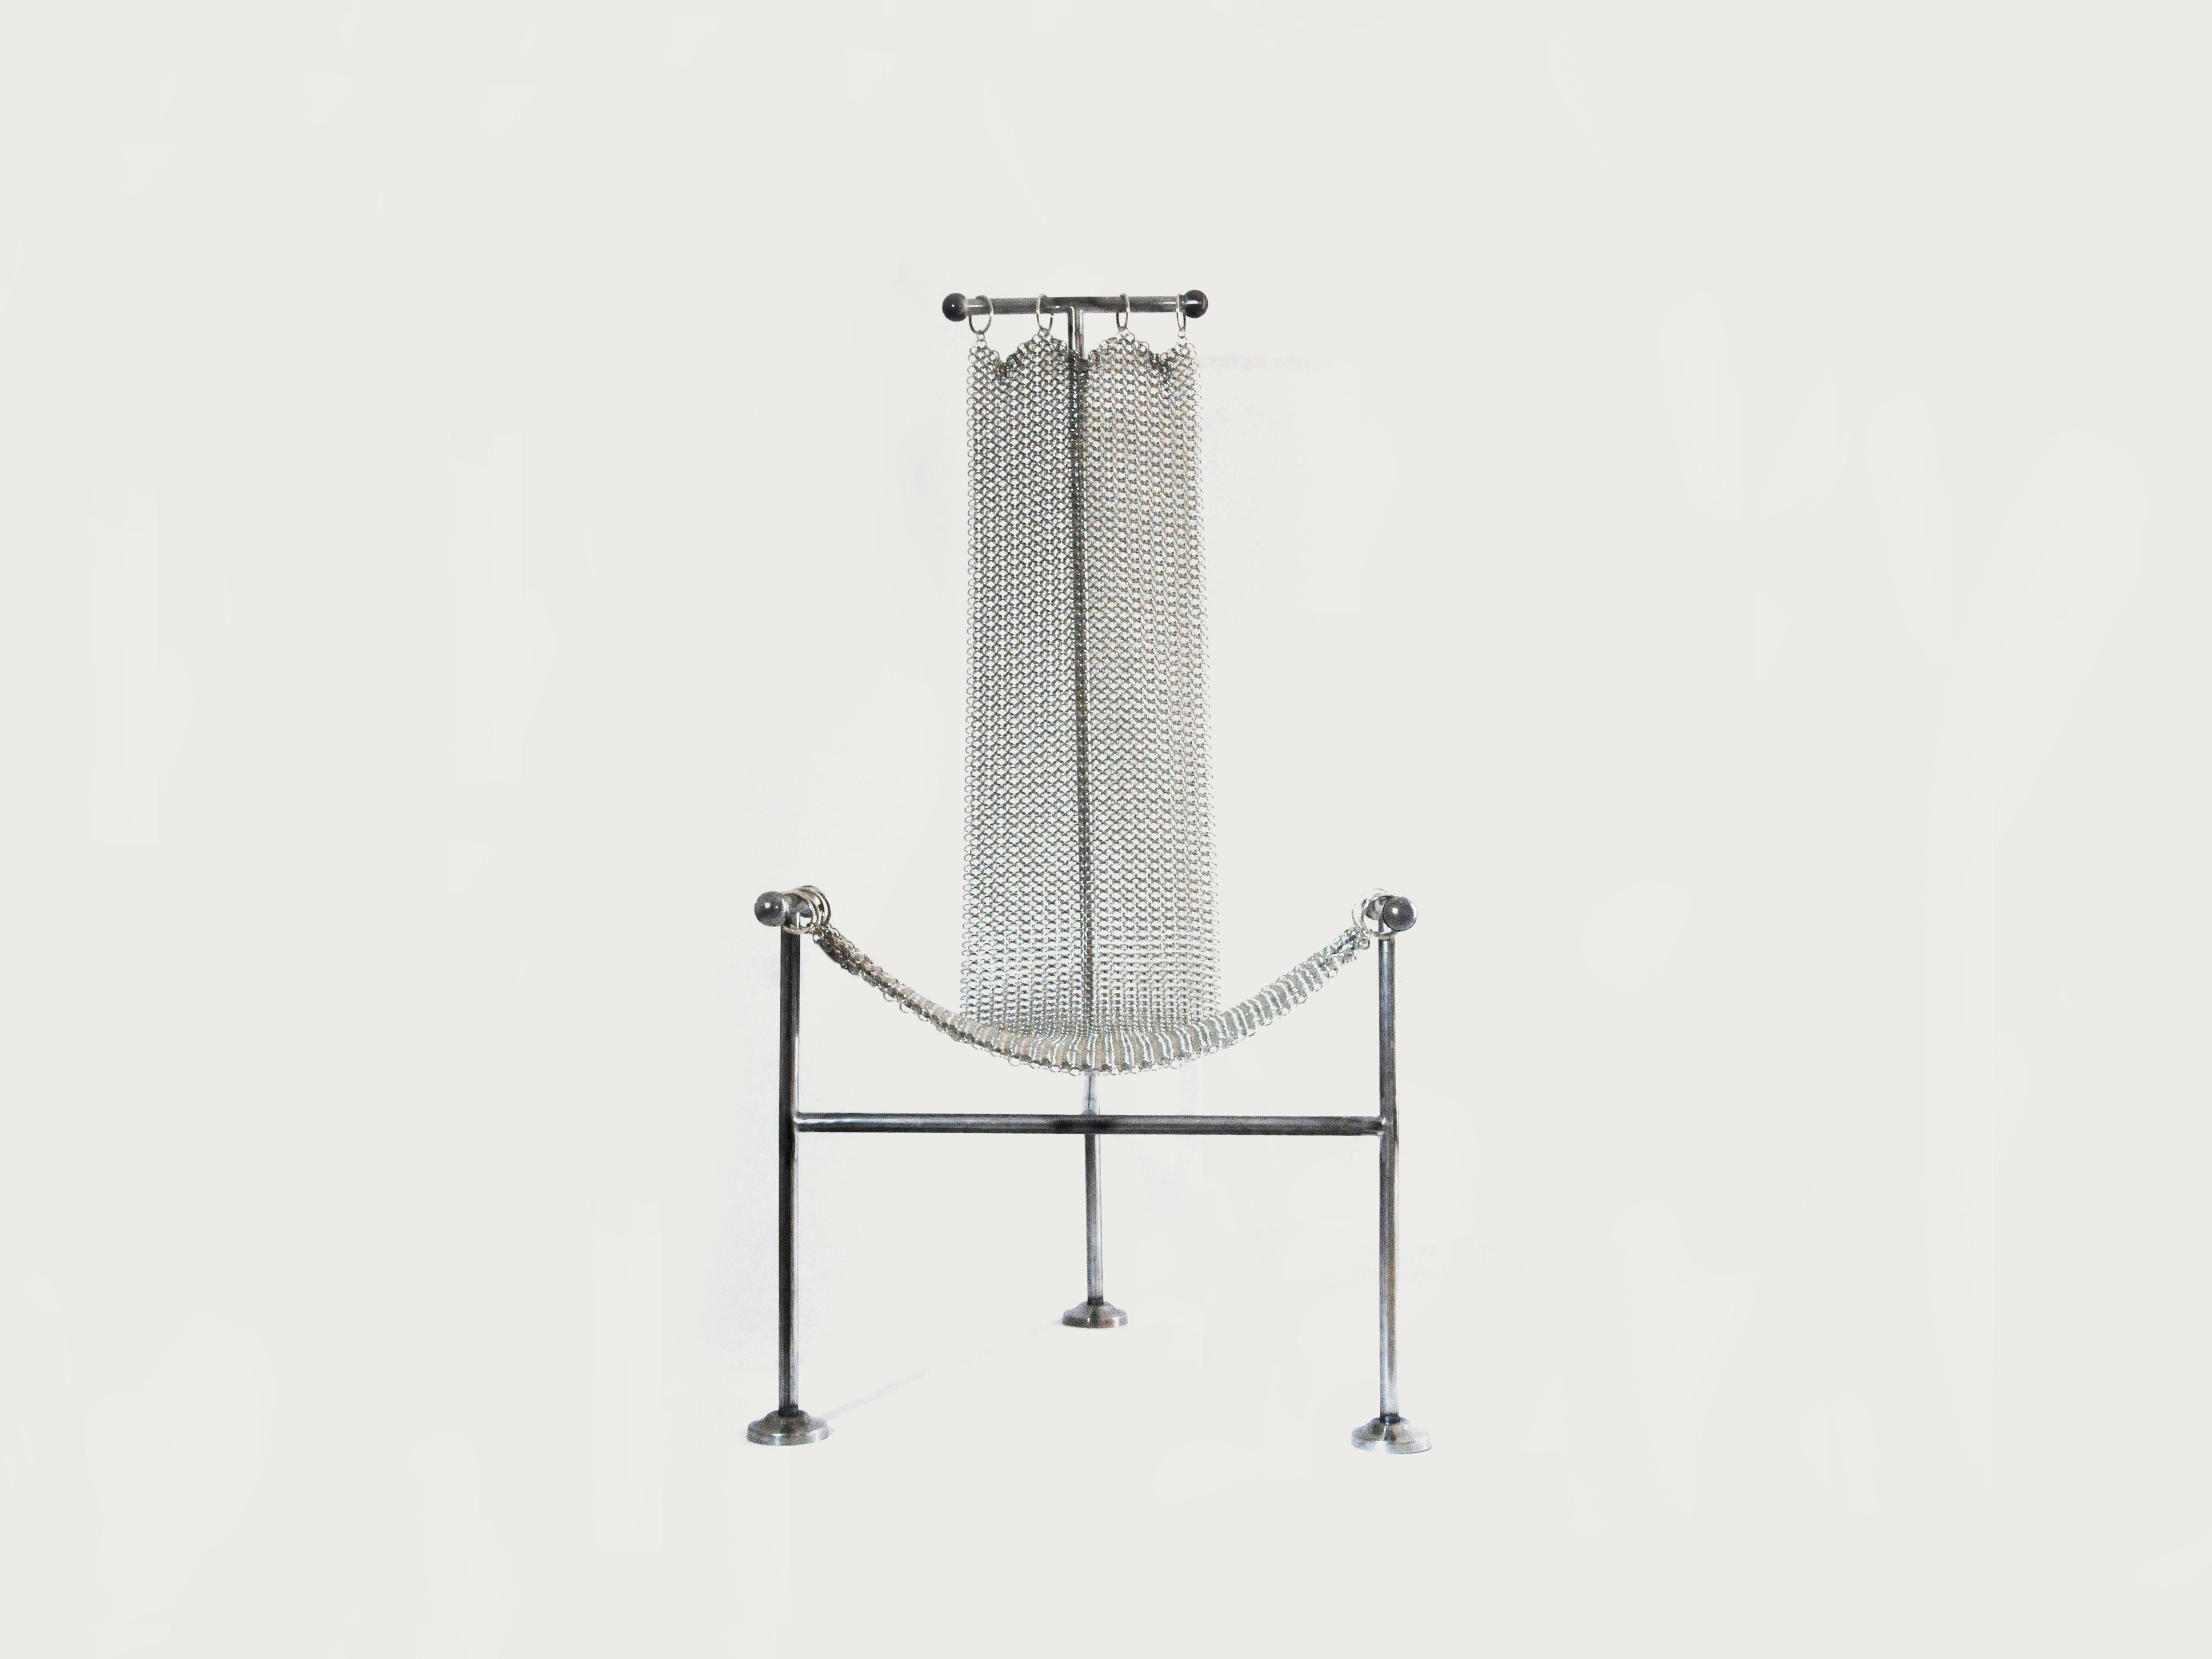 La chaise Chainmail est une nouvelle version de la chaise en T de William &New de 1952. Son assise est constituée d'anneaux métalliques reliés à la main qui s'assemblent pour former une maille solide et flexible qui se drape le long de sa structure